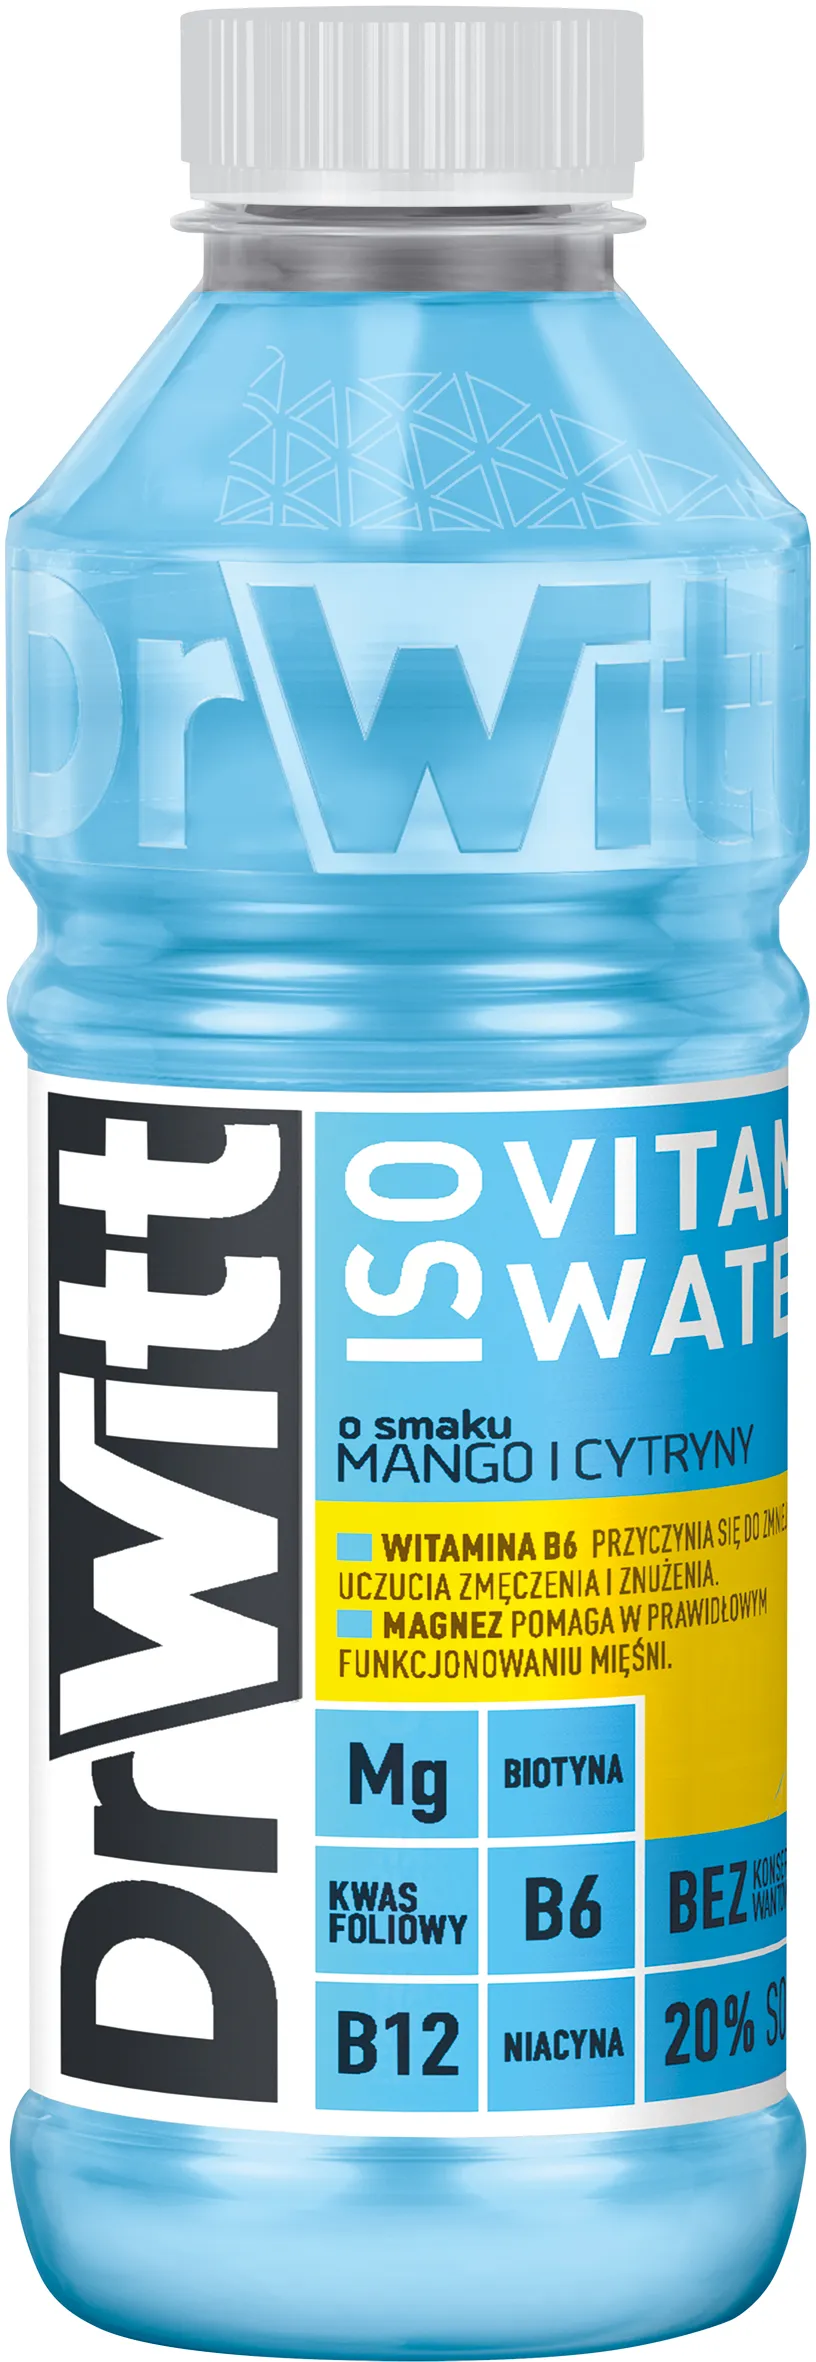 DrWitt ISO Vitamin Water napój izotoniczny, mango-cytryna, 550 ml. Data ważności 31.05.2024